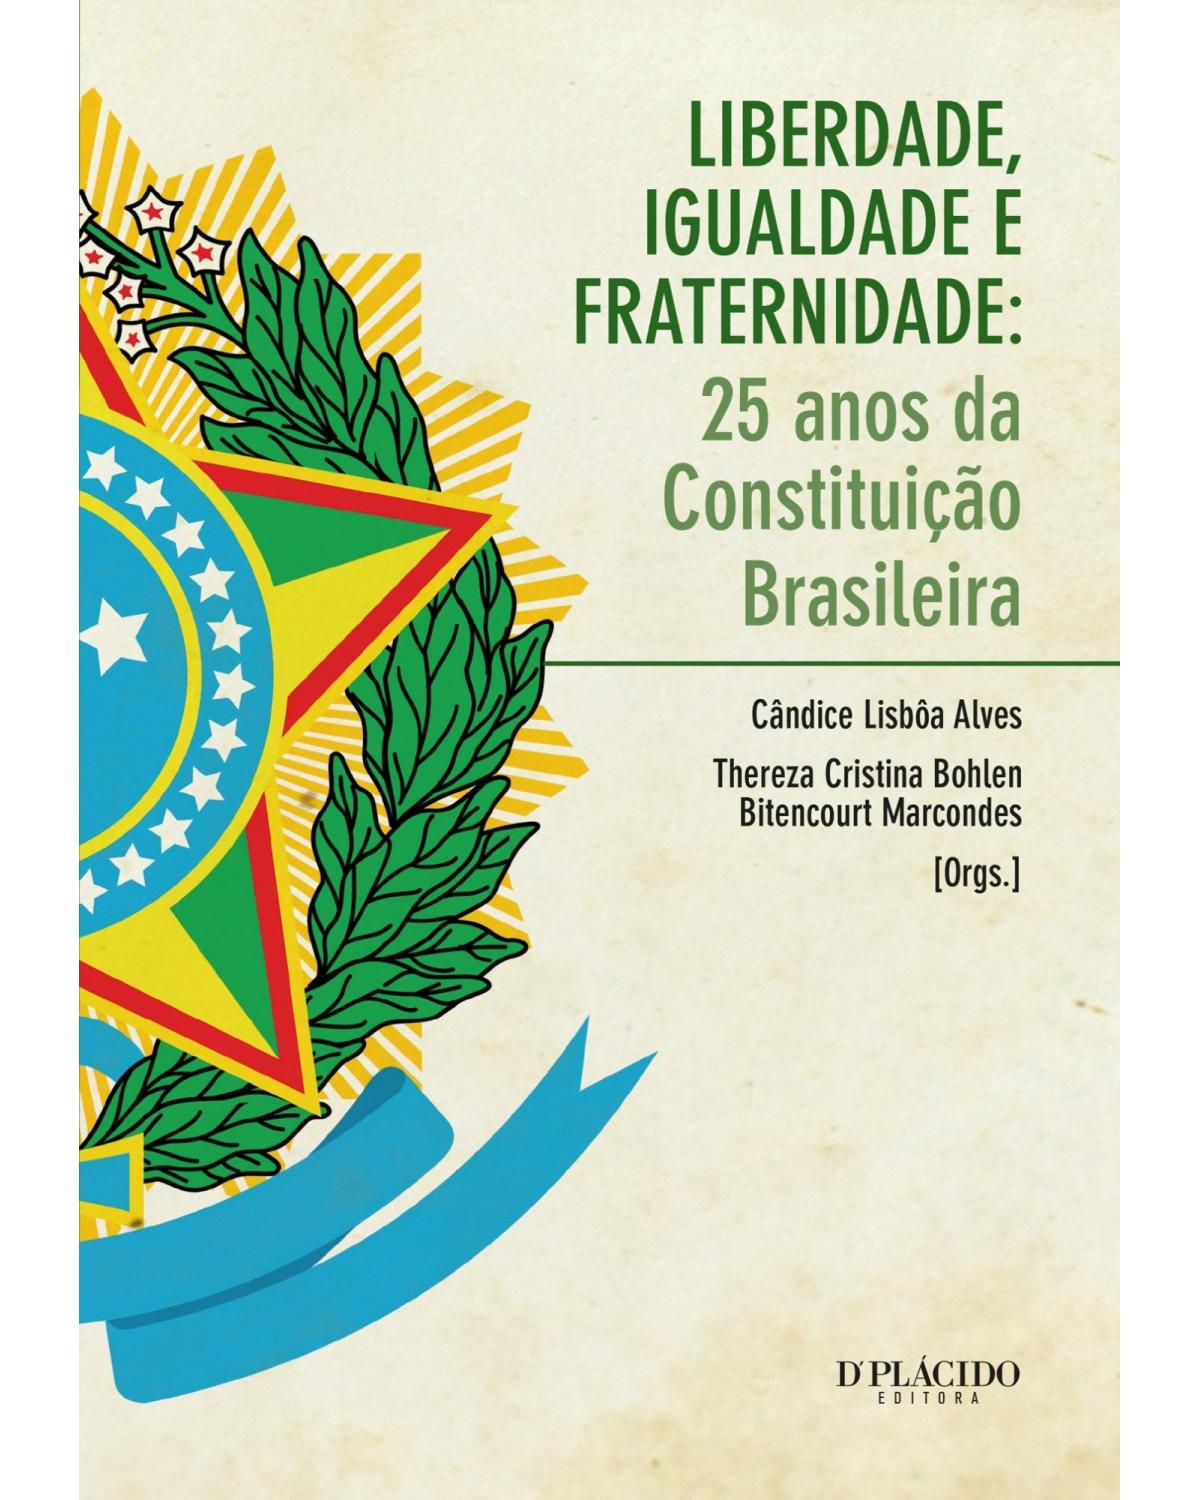 Liberdade, igualdade e fraternidade - 25 anos da Constituição brasileira - 1ª Edição | 2013